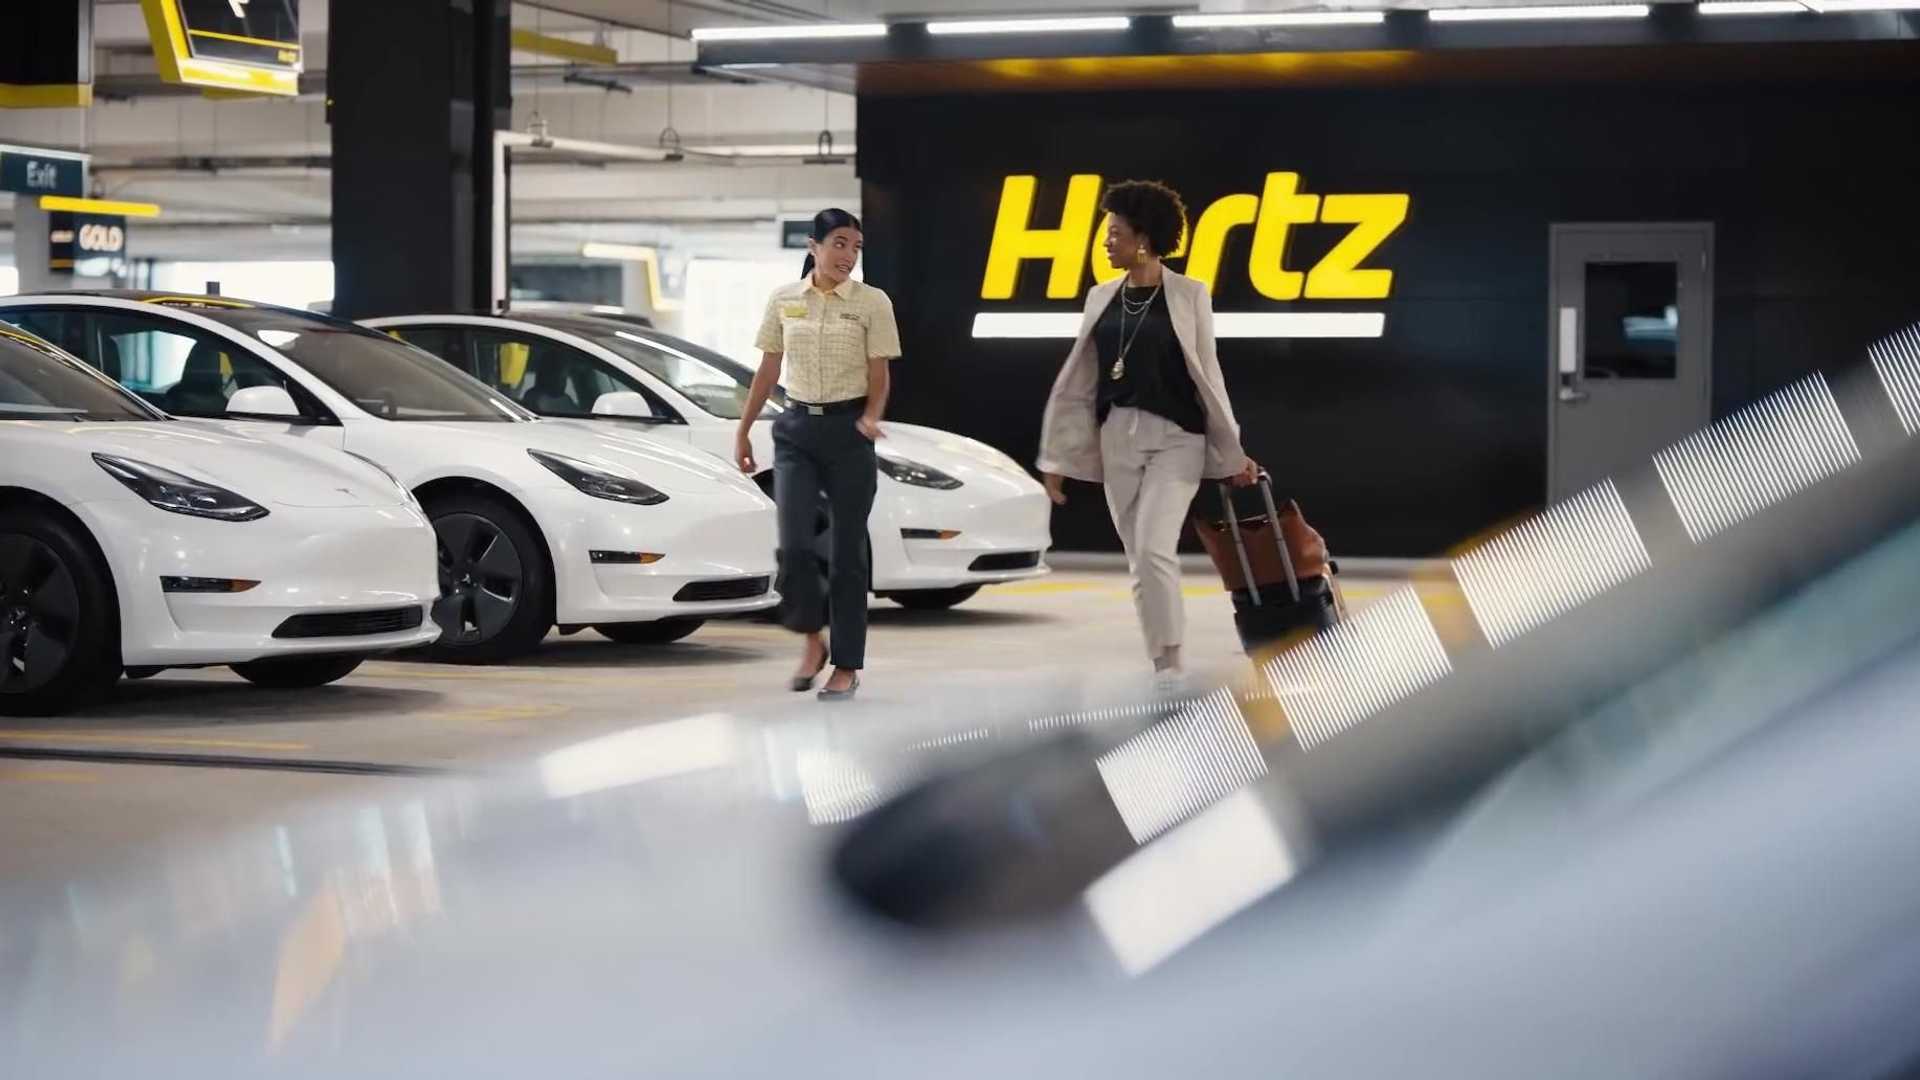 Hertz Tesla